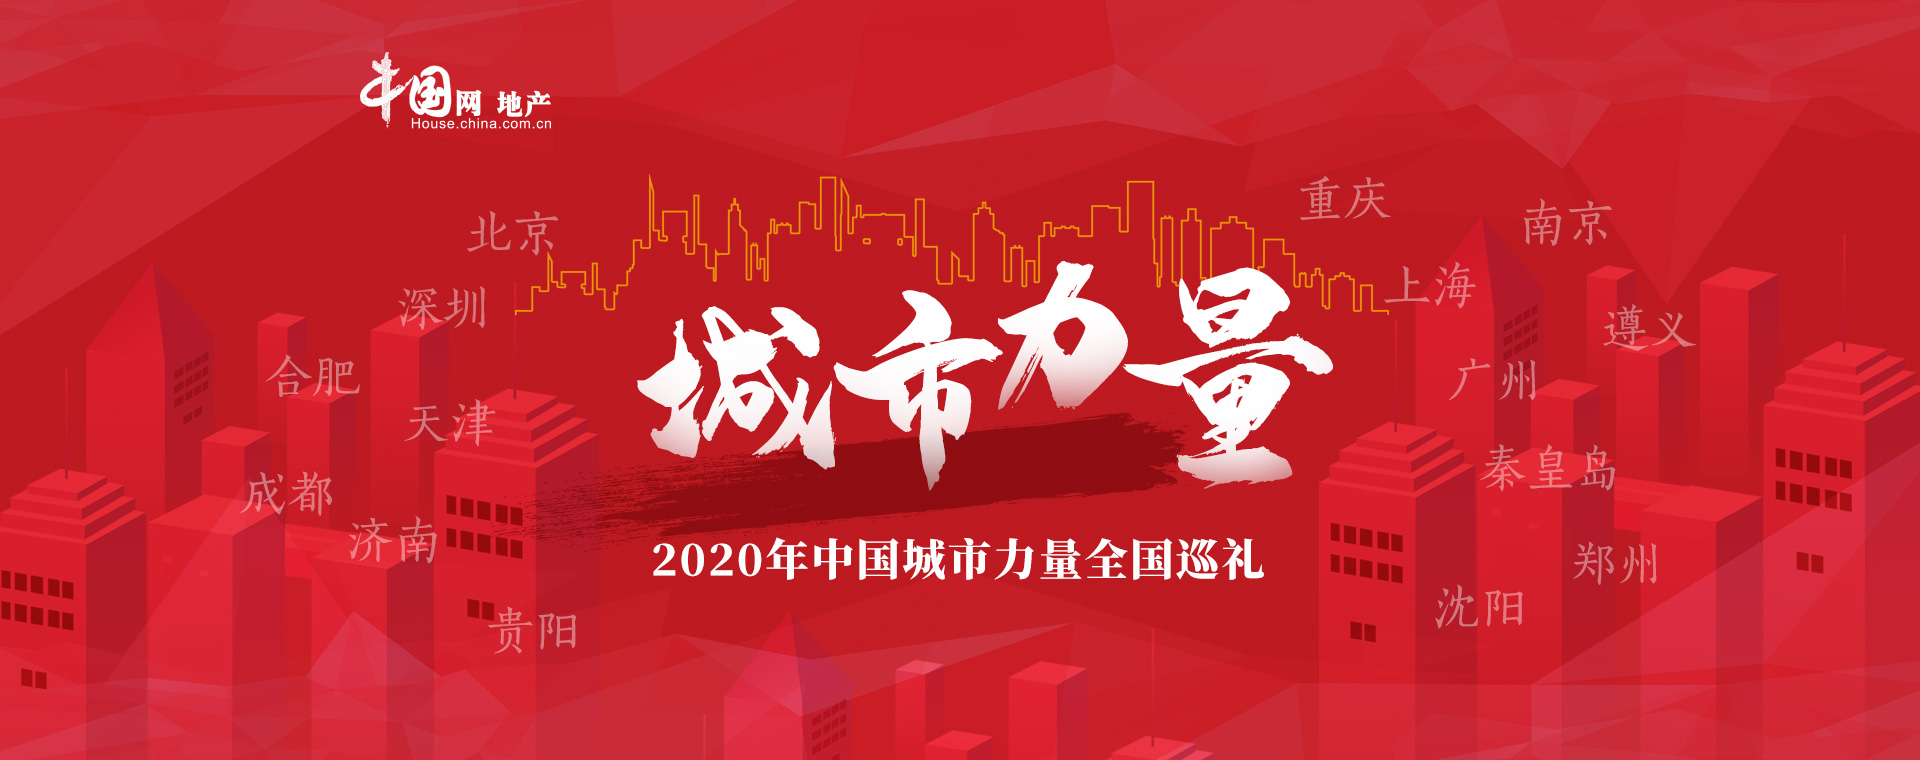 致敬城市蜕变 探寻力量动能 ——2020年中国城市力量全国巡礼启幕-中国网地产